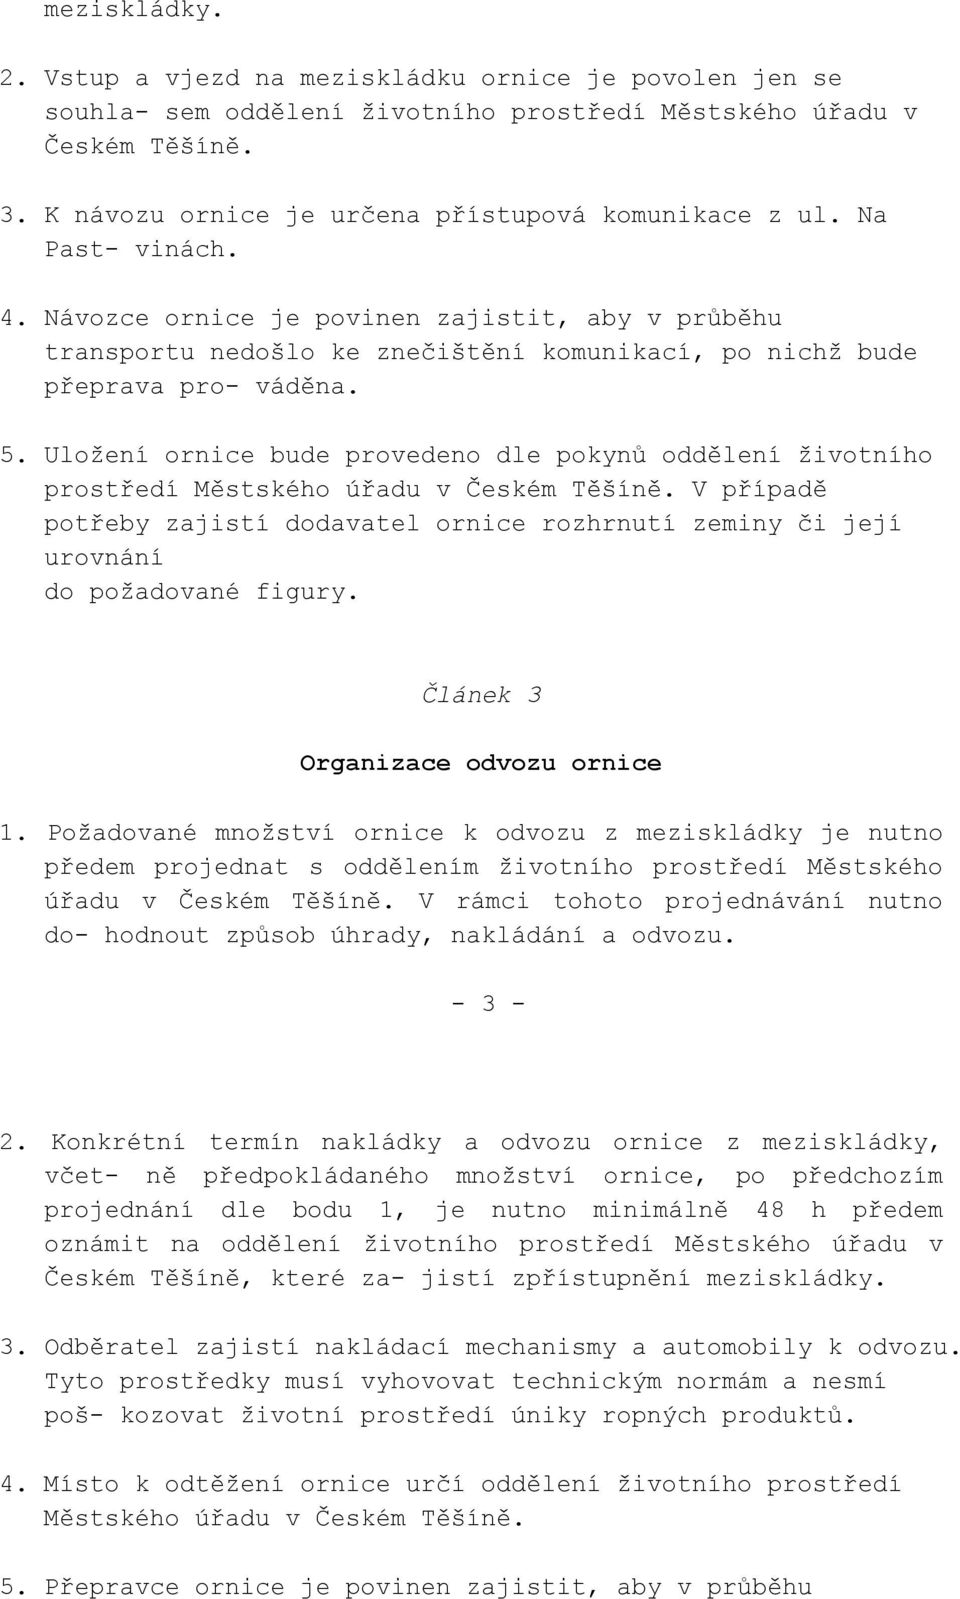 Uložení ornice bude provedeno dle pokynů oddělení životního prostředí Městského úřadu v Českém Těšíně.